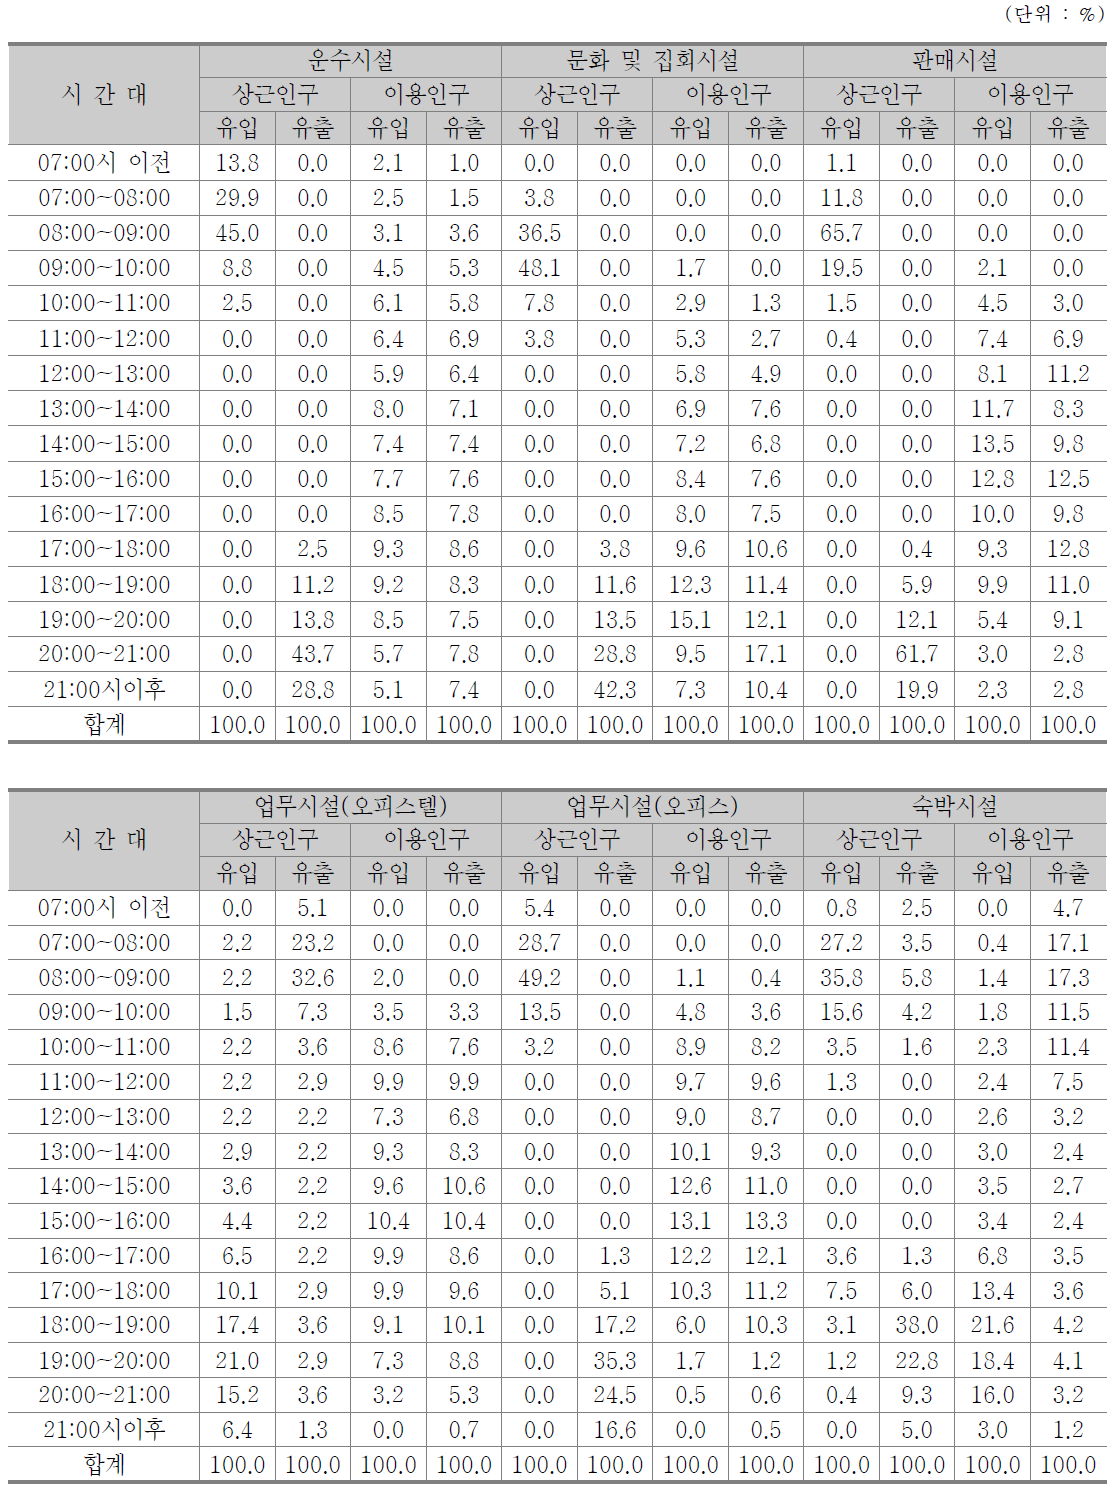 활동인구 용도별/시간대별 유출입 통행분포 비율